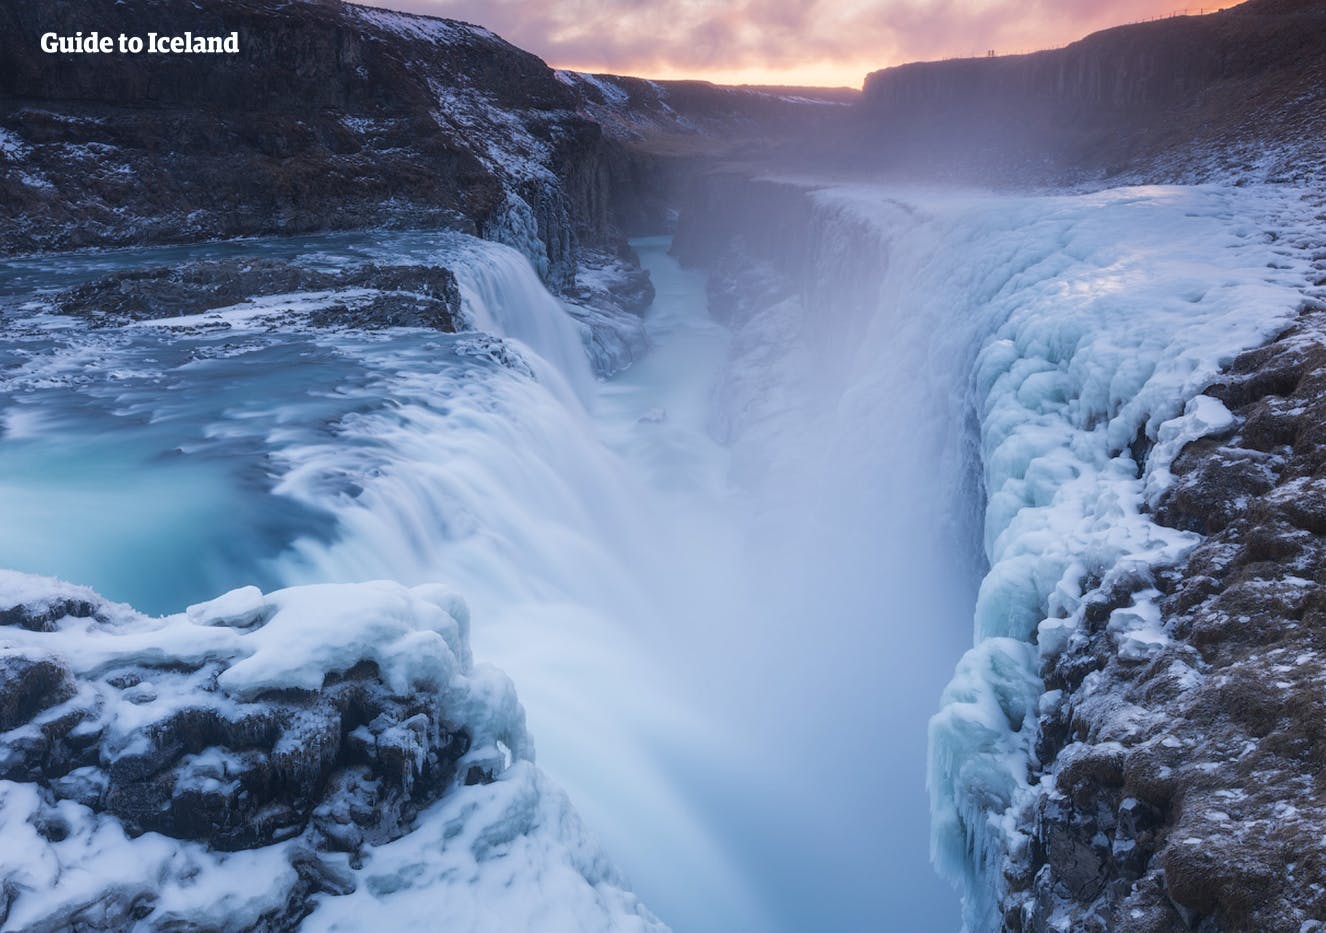 W dolinie na południu Islandii, która przecina piękny wiejski krajobraz, znajduje się słynny wodospad Gullfoss.